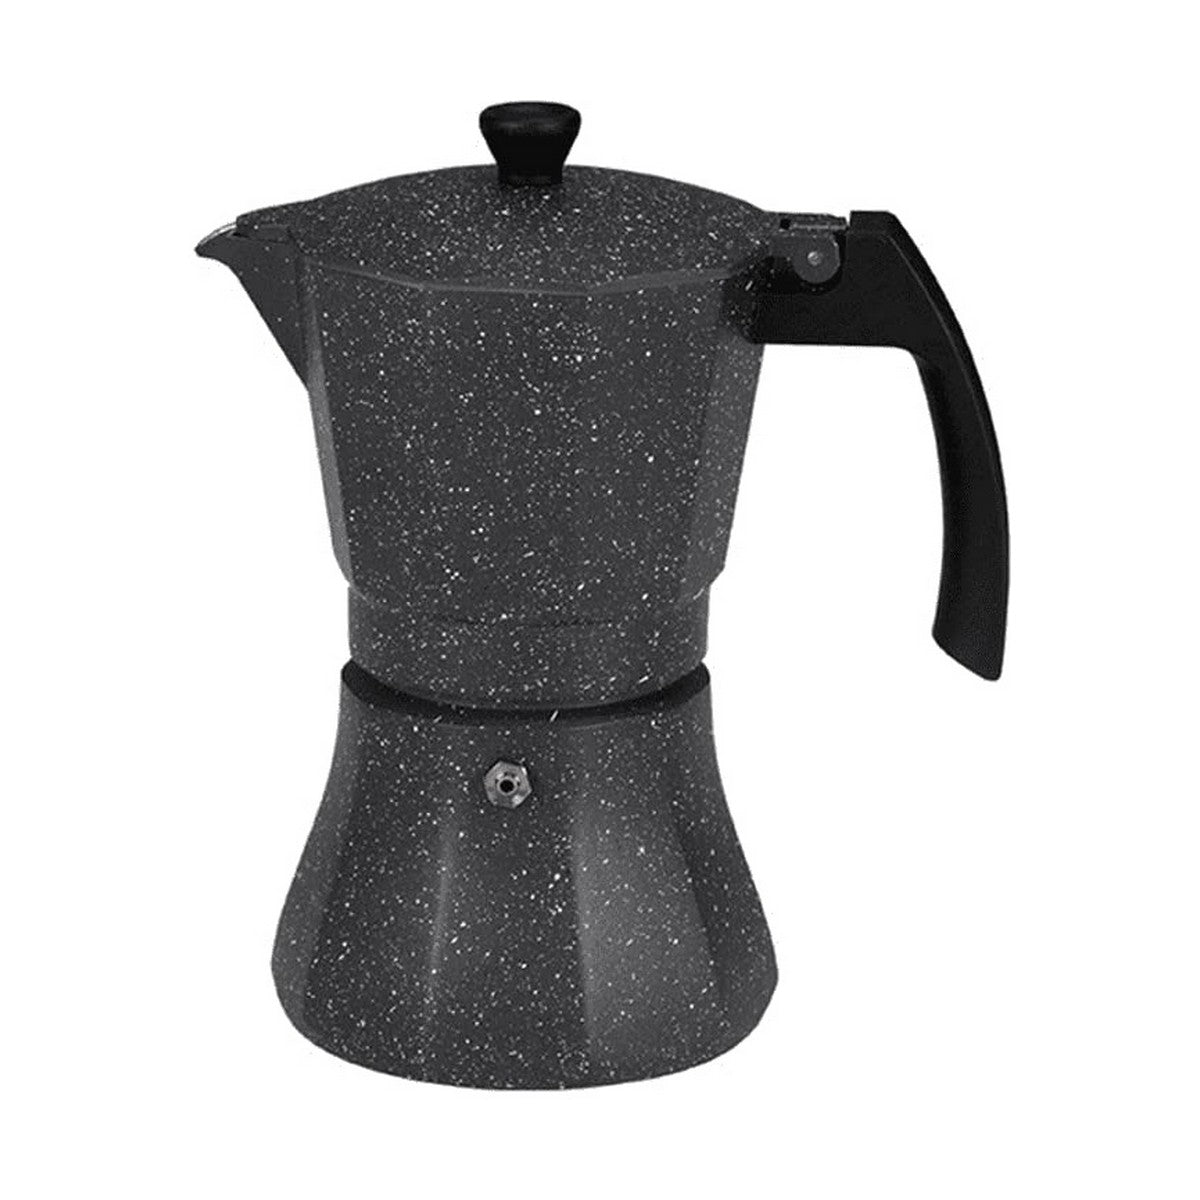 Kahvinvalmistaja EDM Black Alumiini (kahvinvalmistaja)